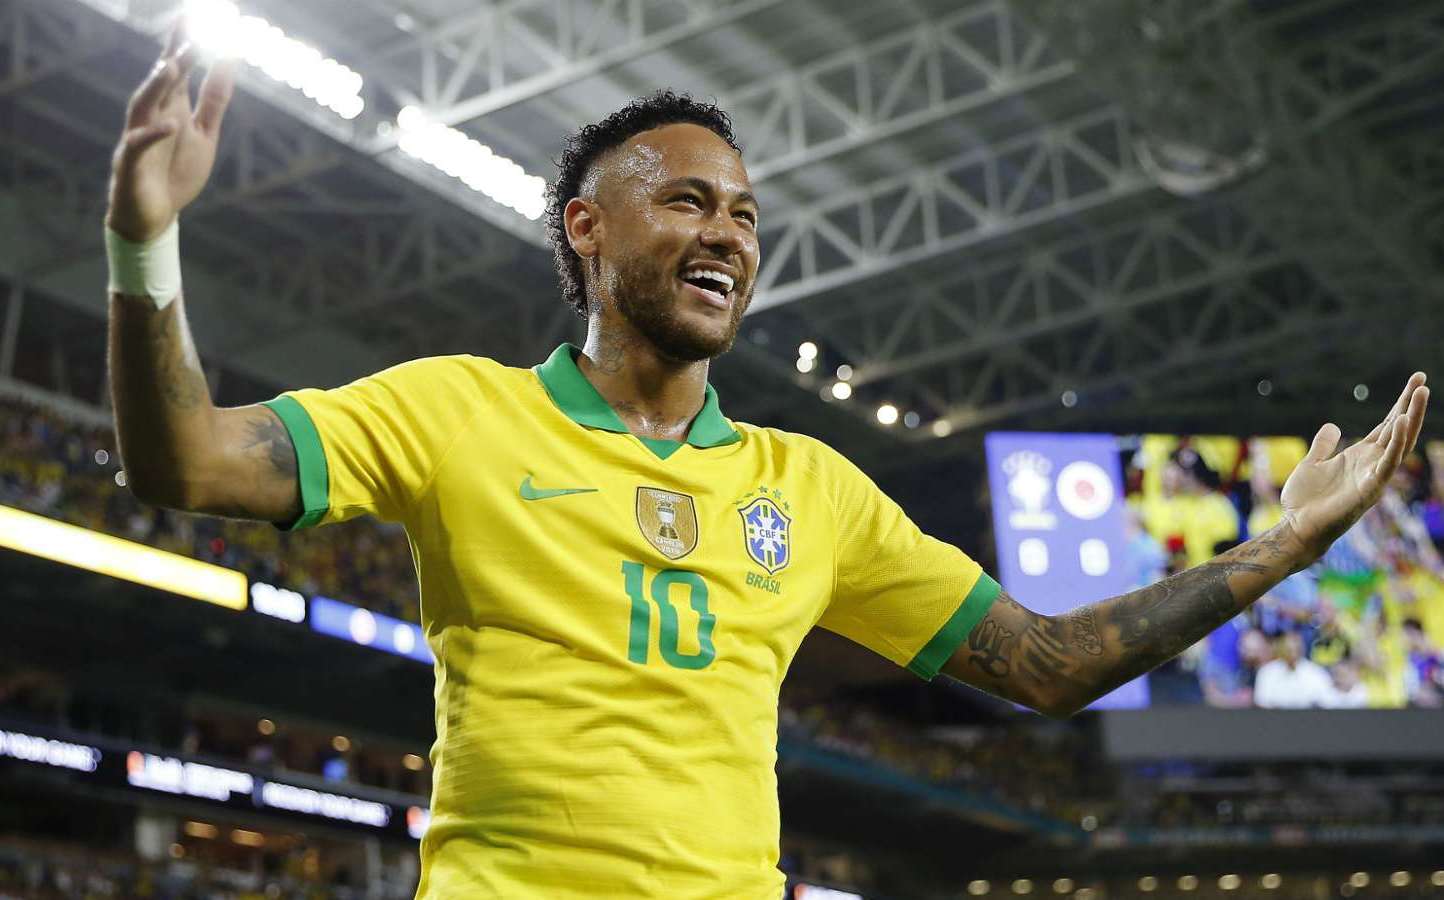 Ảnh Neymar JR Đẹp Ngầu Chất Nhất Nhất Quả Đất Cho Fan